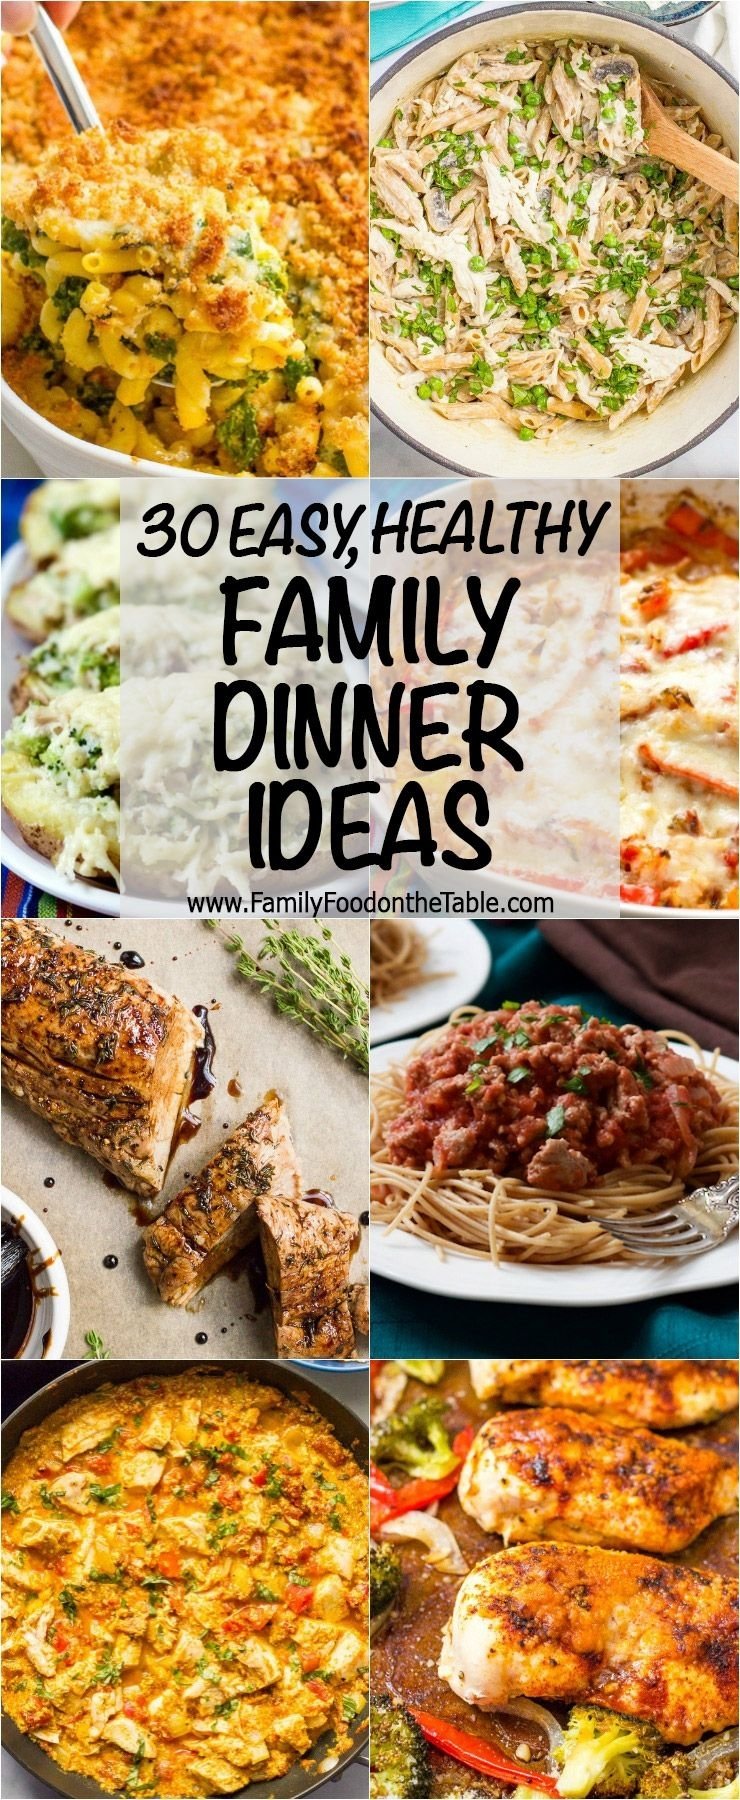 10 Trendy New Dinner Ideas For Family 2024